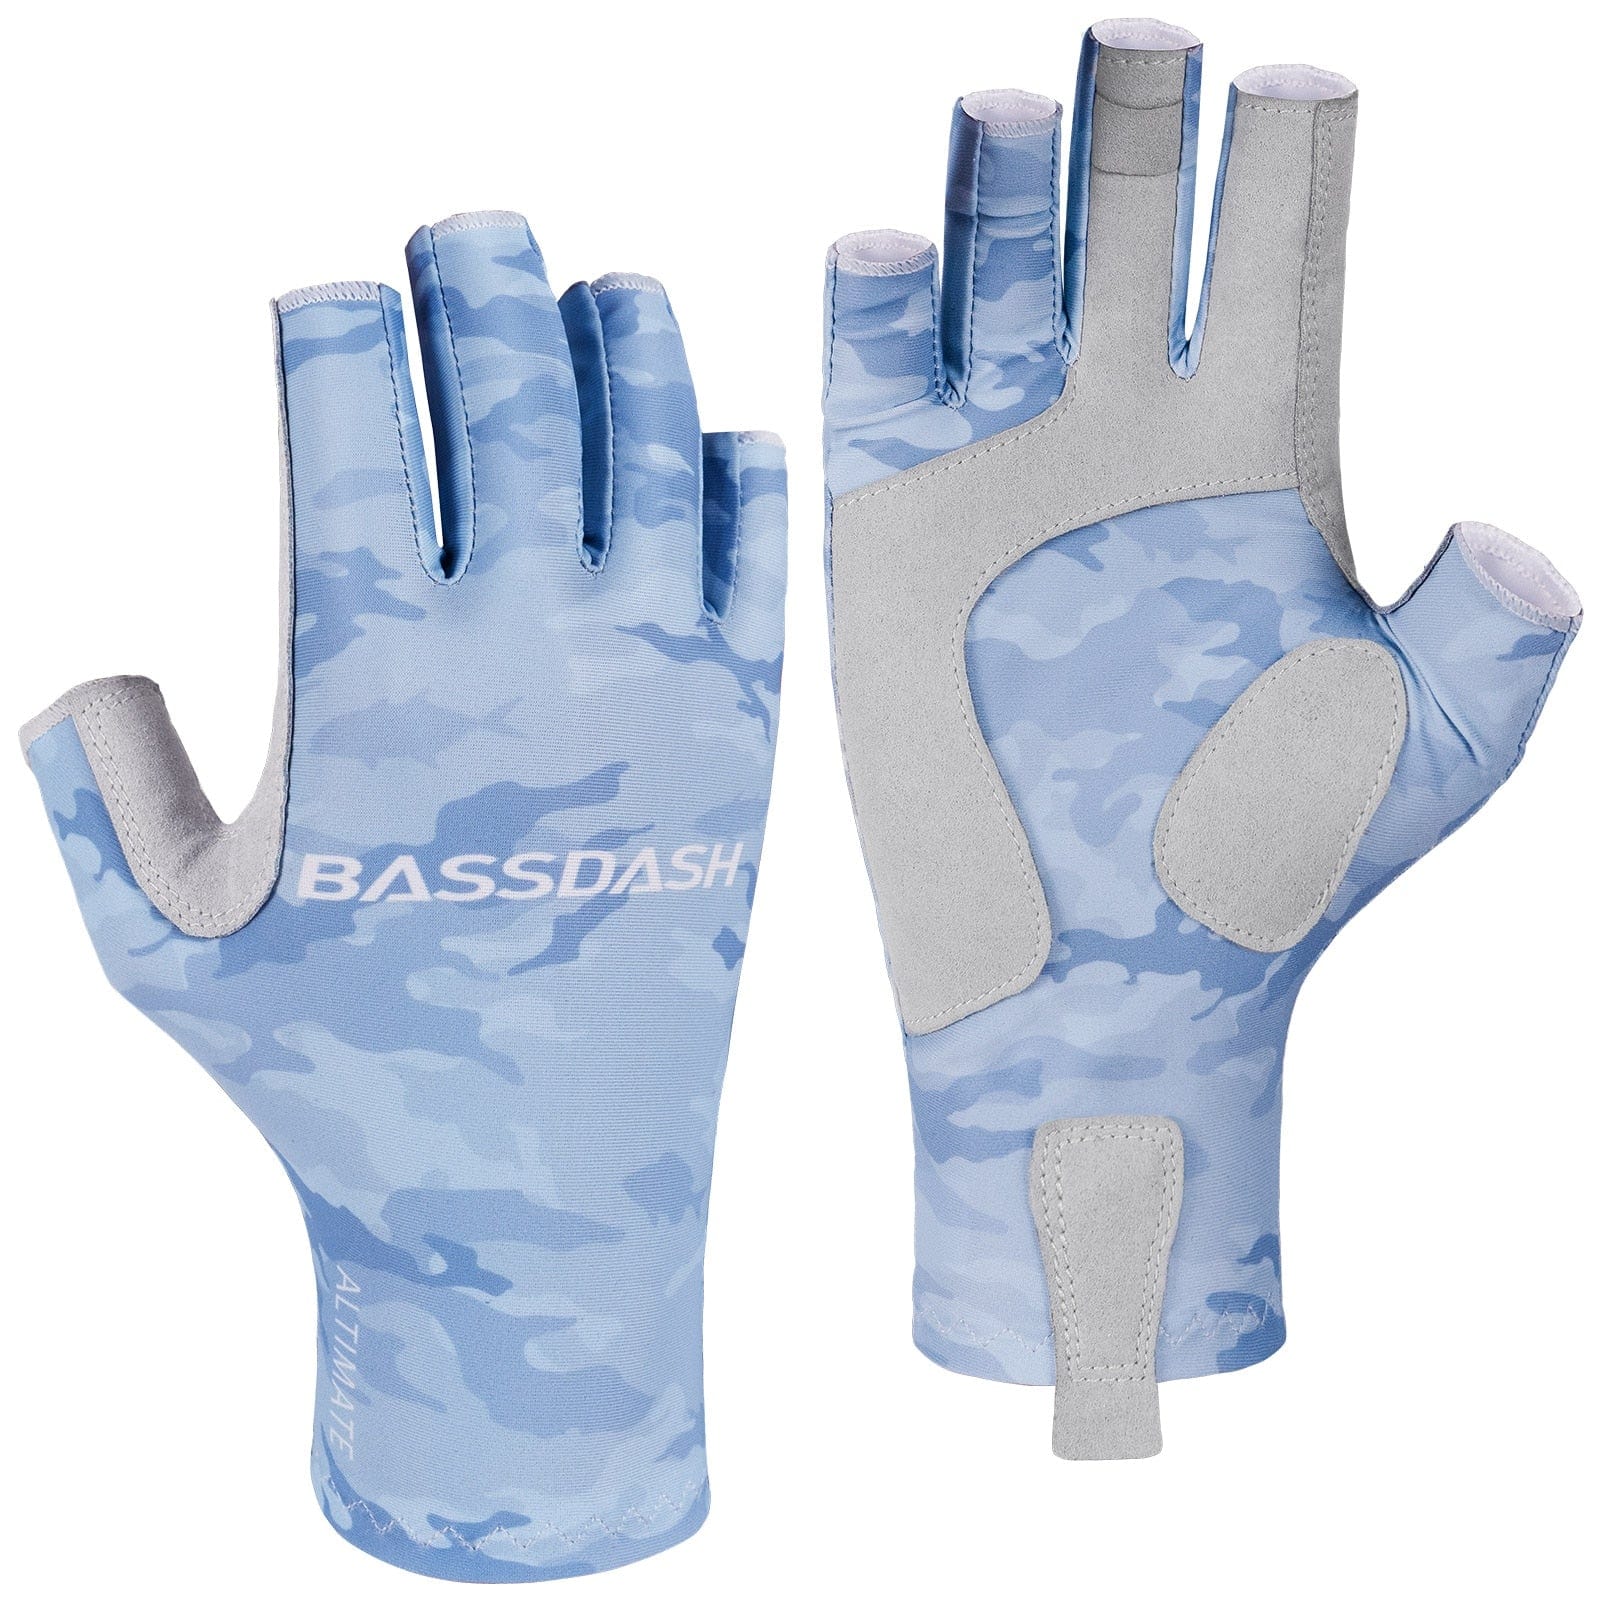 Bassdash Altimate Fingerless Fishing Gloves